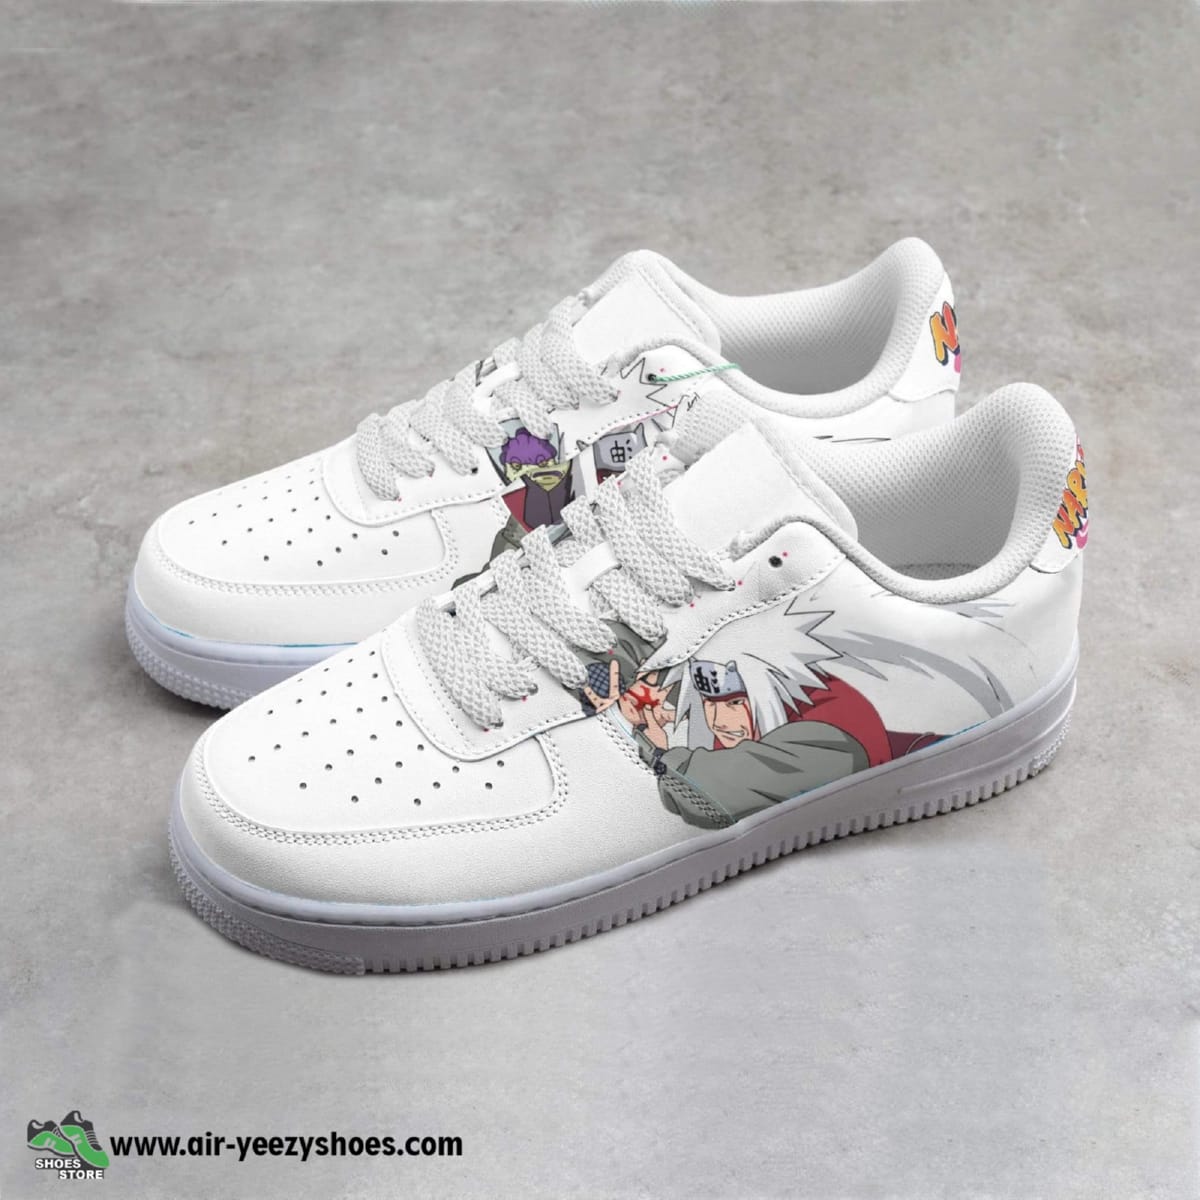 Jiraiya Anime Air Force 1 Sneaker, Custom Naruto Anime Shoes